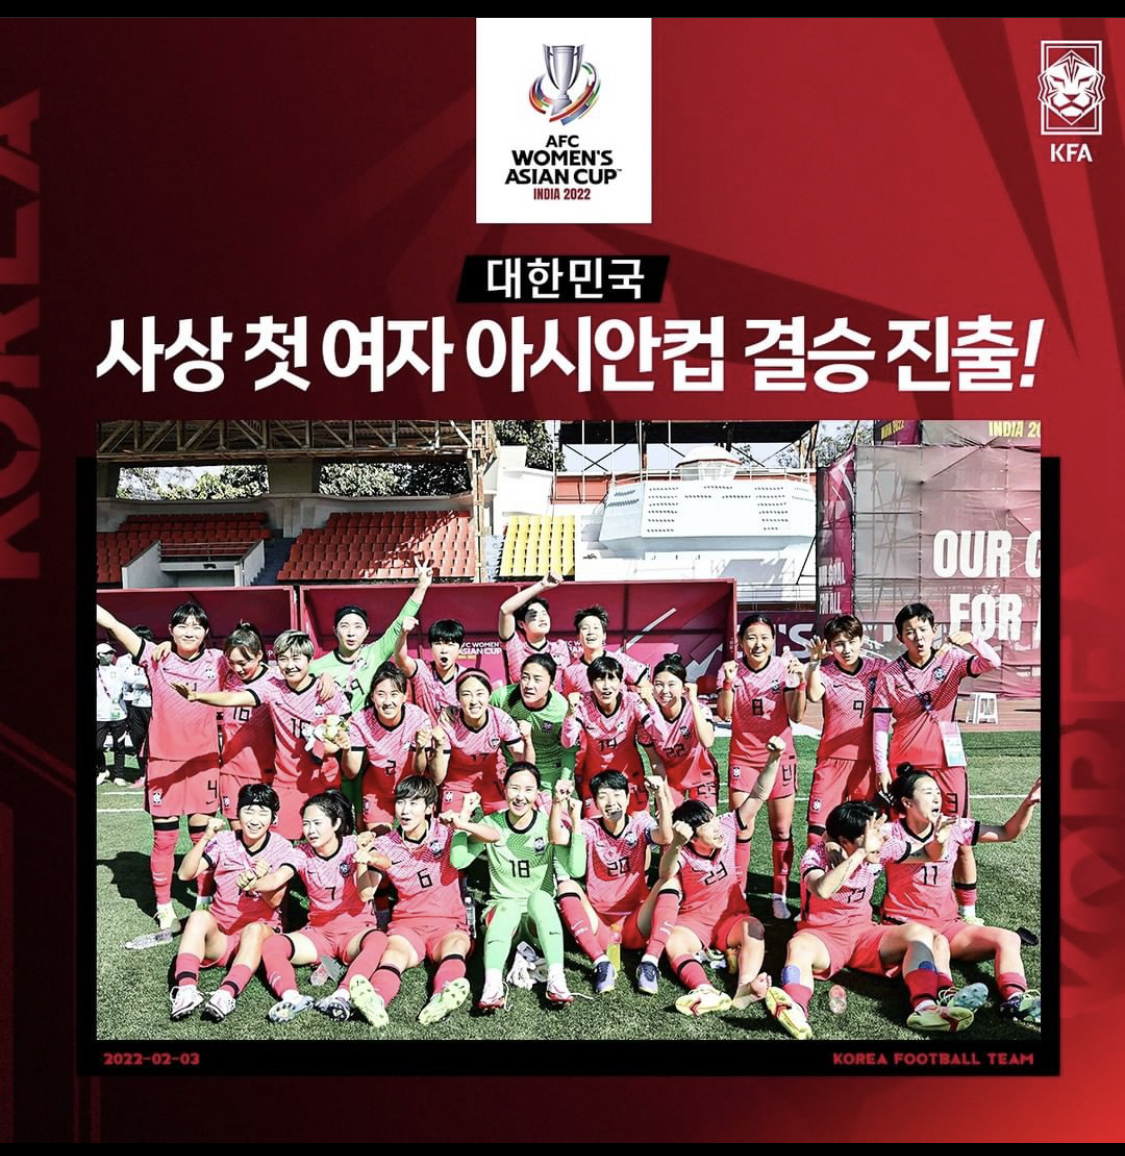 2월 6일 대한민국 중국 여자 축구 아시안컵 결승전 생중계 인터넷 중계방송 완벽정리